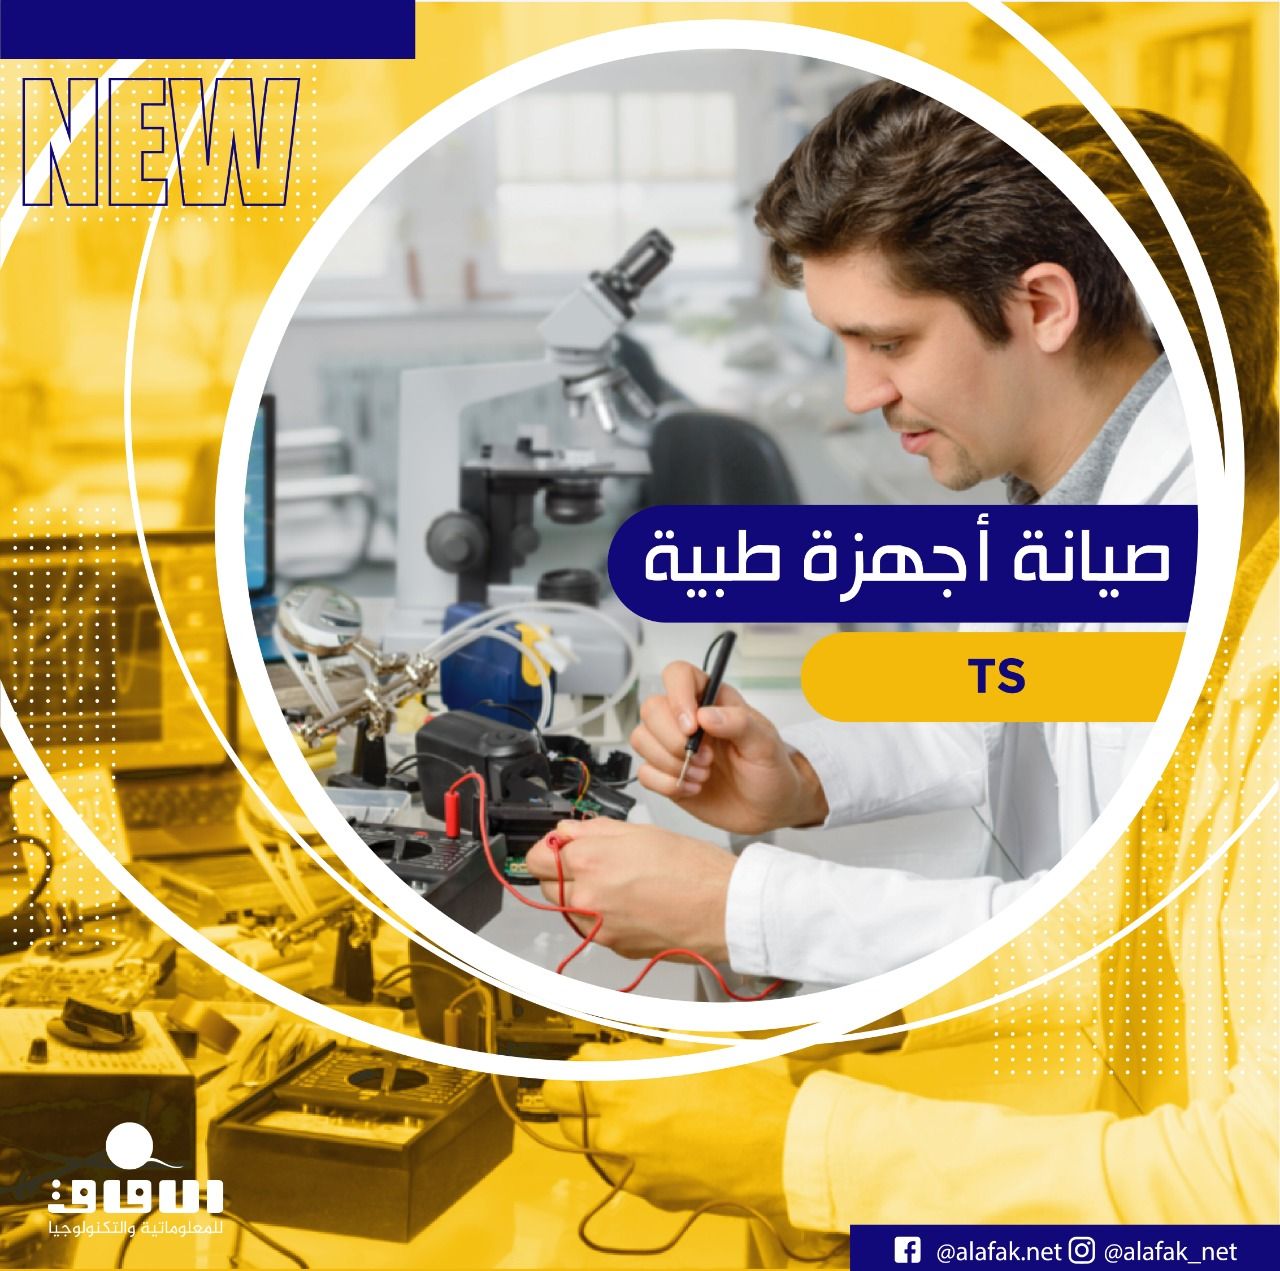 معاهد الآفاق فرع صور - المهنيه الجعفريه تعلن عن استمرار التسجيل للعام الدراسي الجديد 